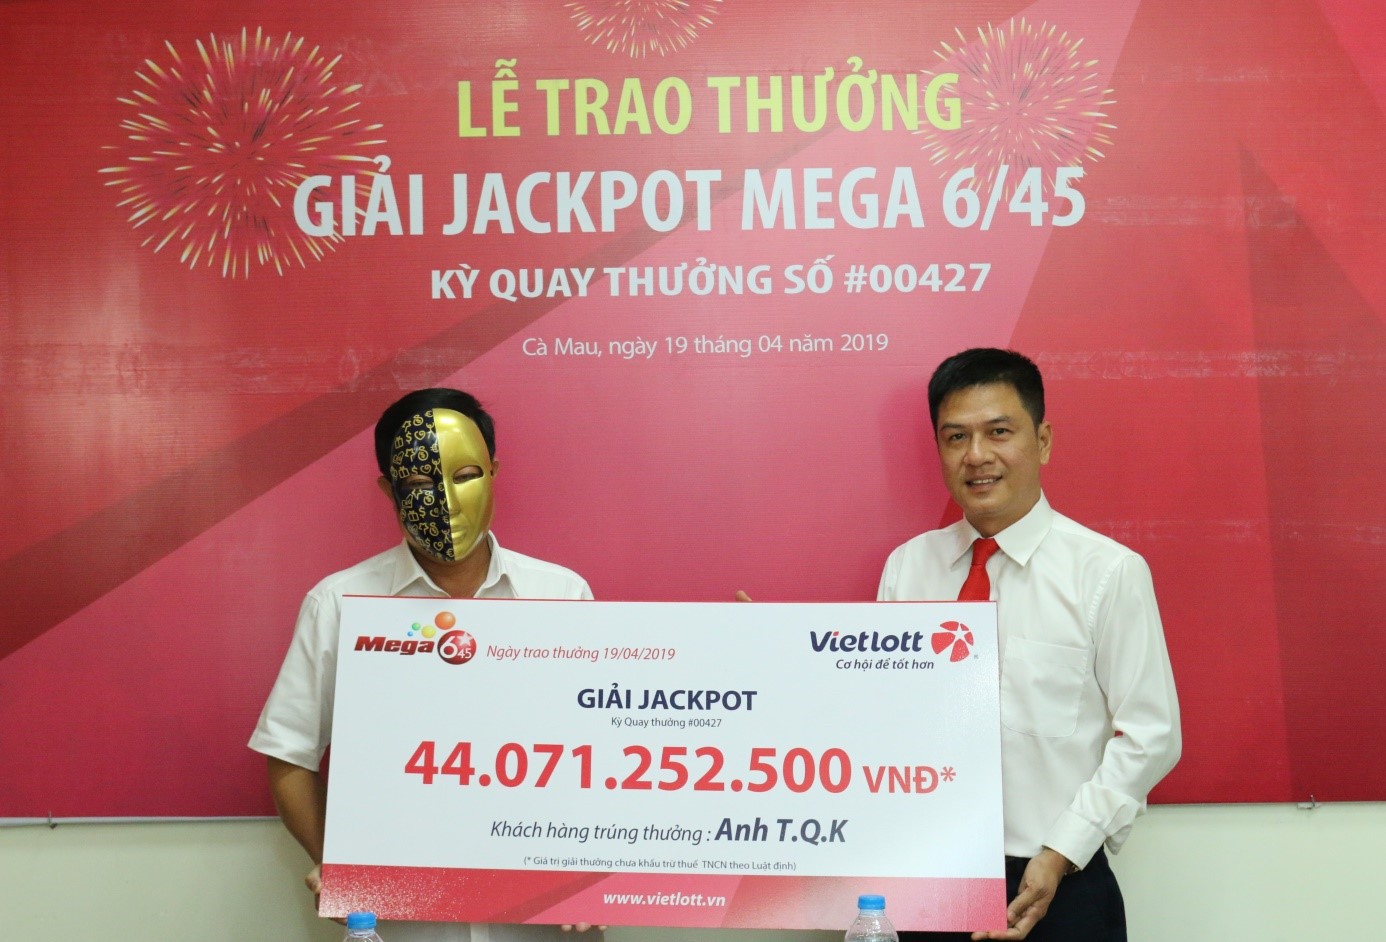 Vietlott trao giải jackpot Mega 6/45 trị giá 44 tỉ đồng